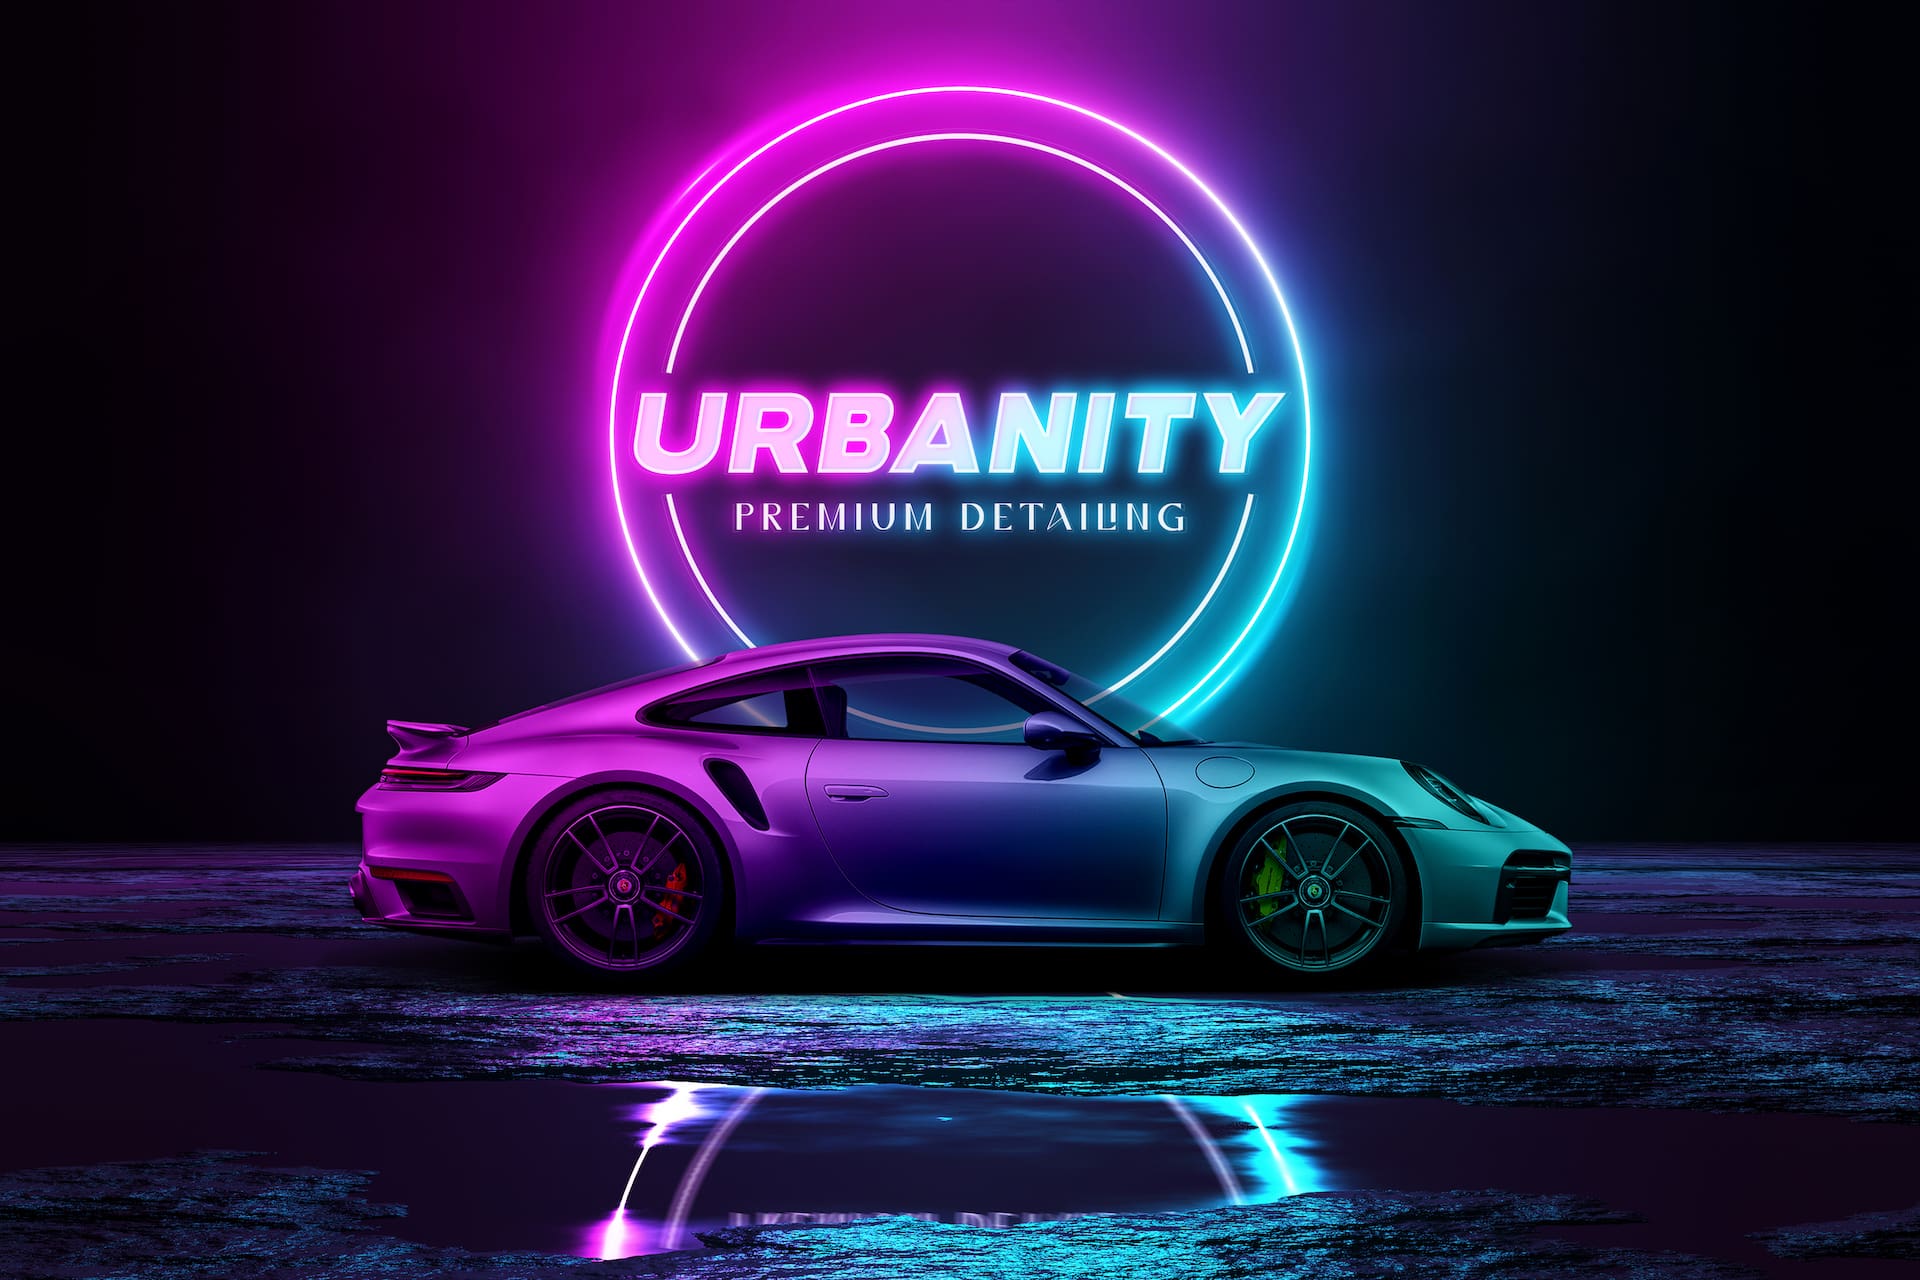 Branding for Urbanity Premium Detailing by Spacey Studios